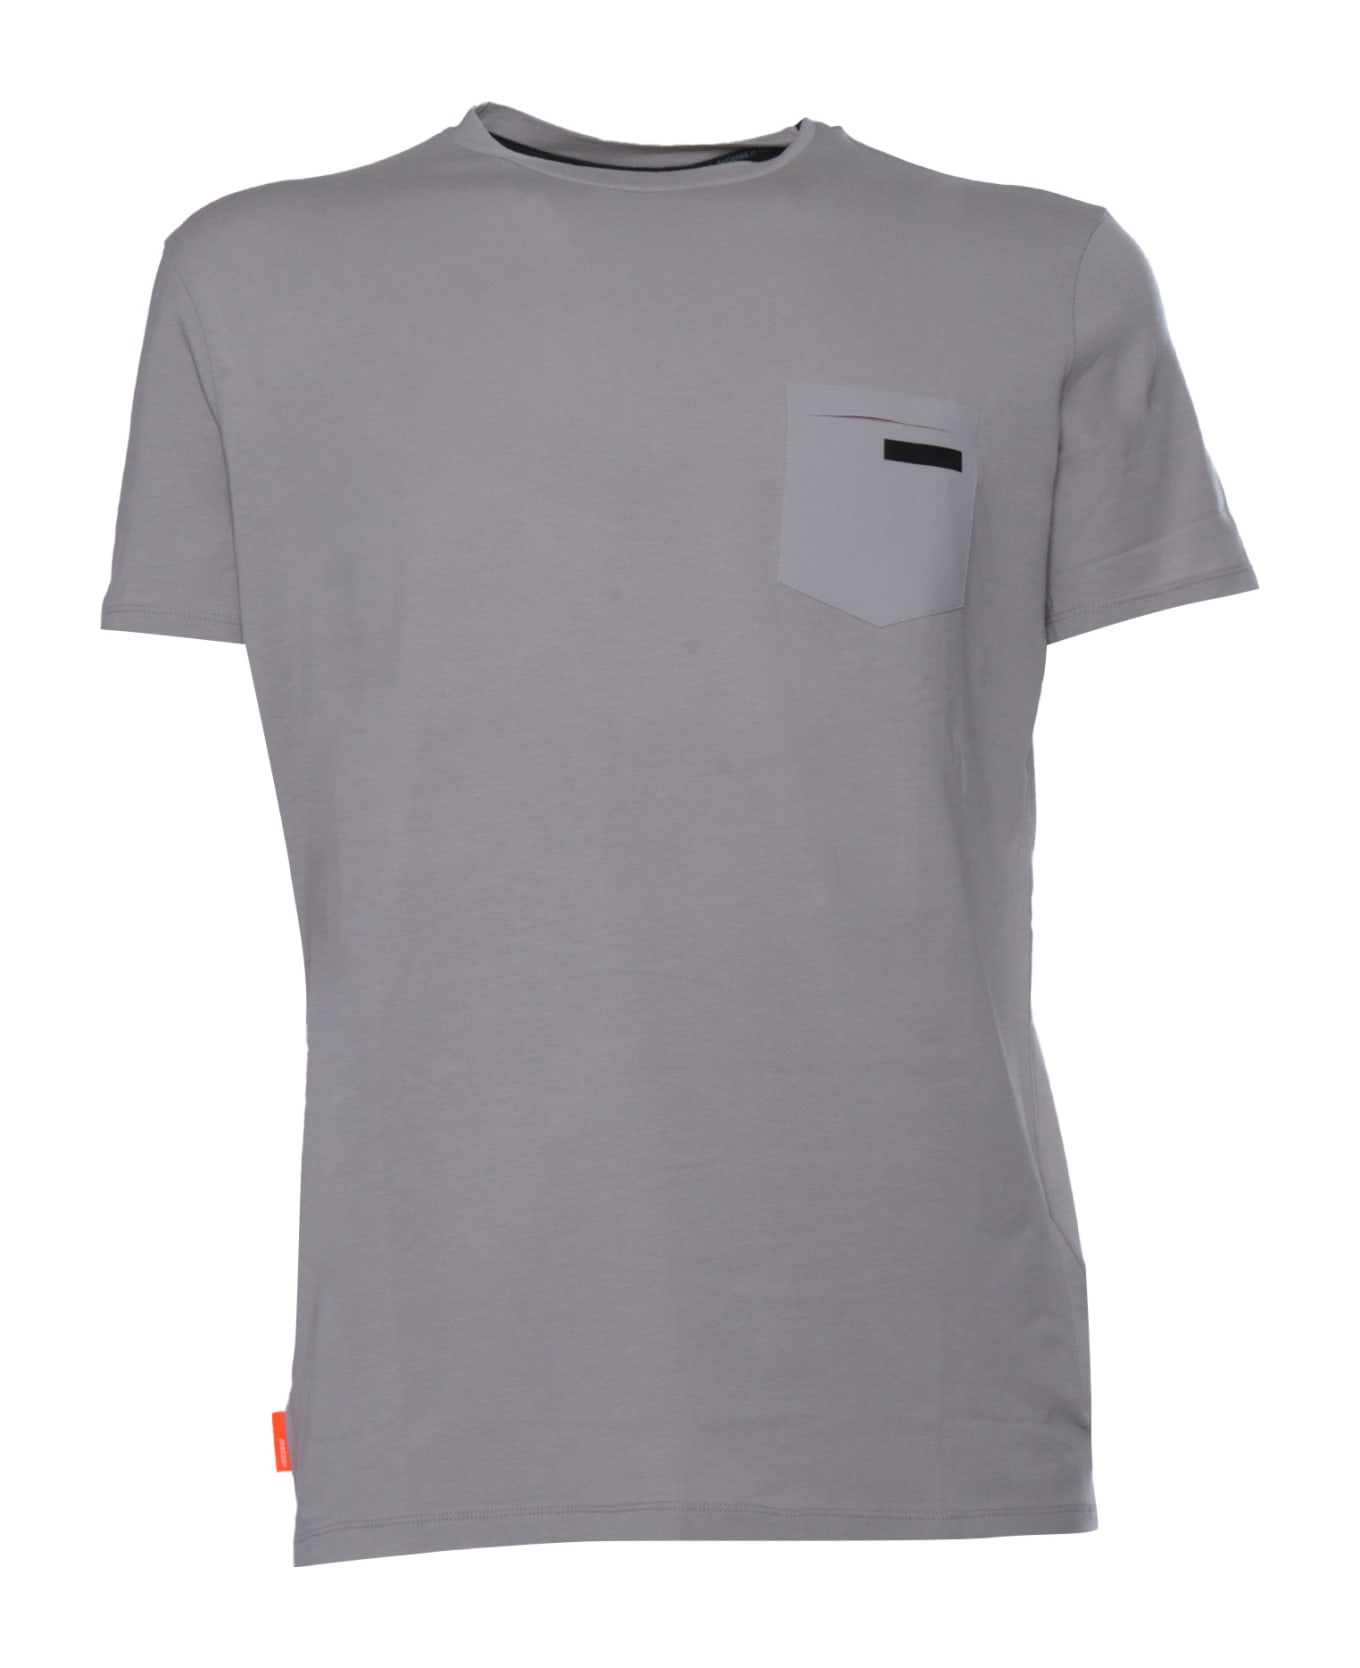 RRD - Roberto Ricci Design Gray Revo T-shirt - GREY